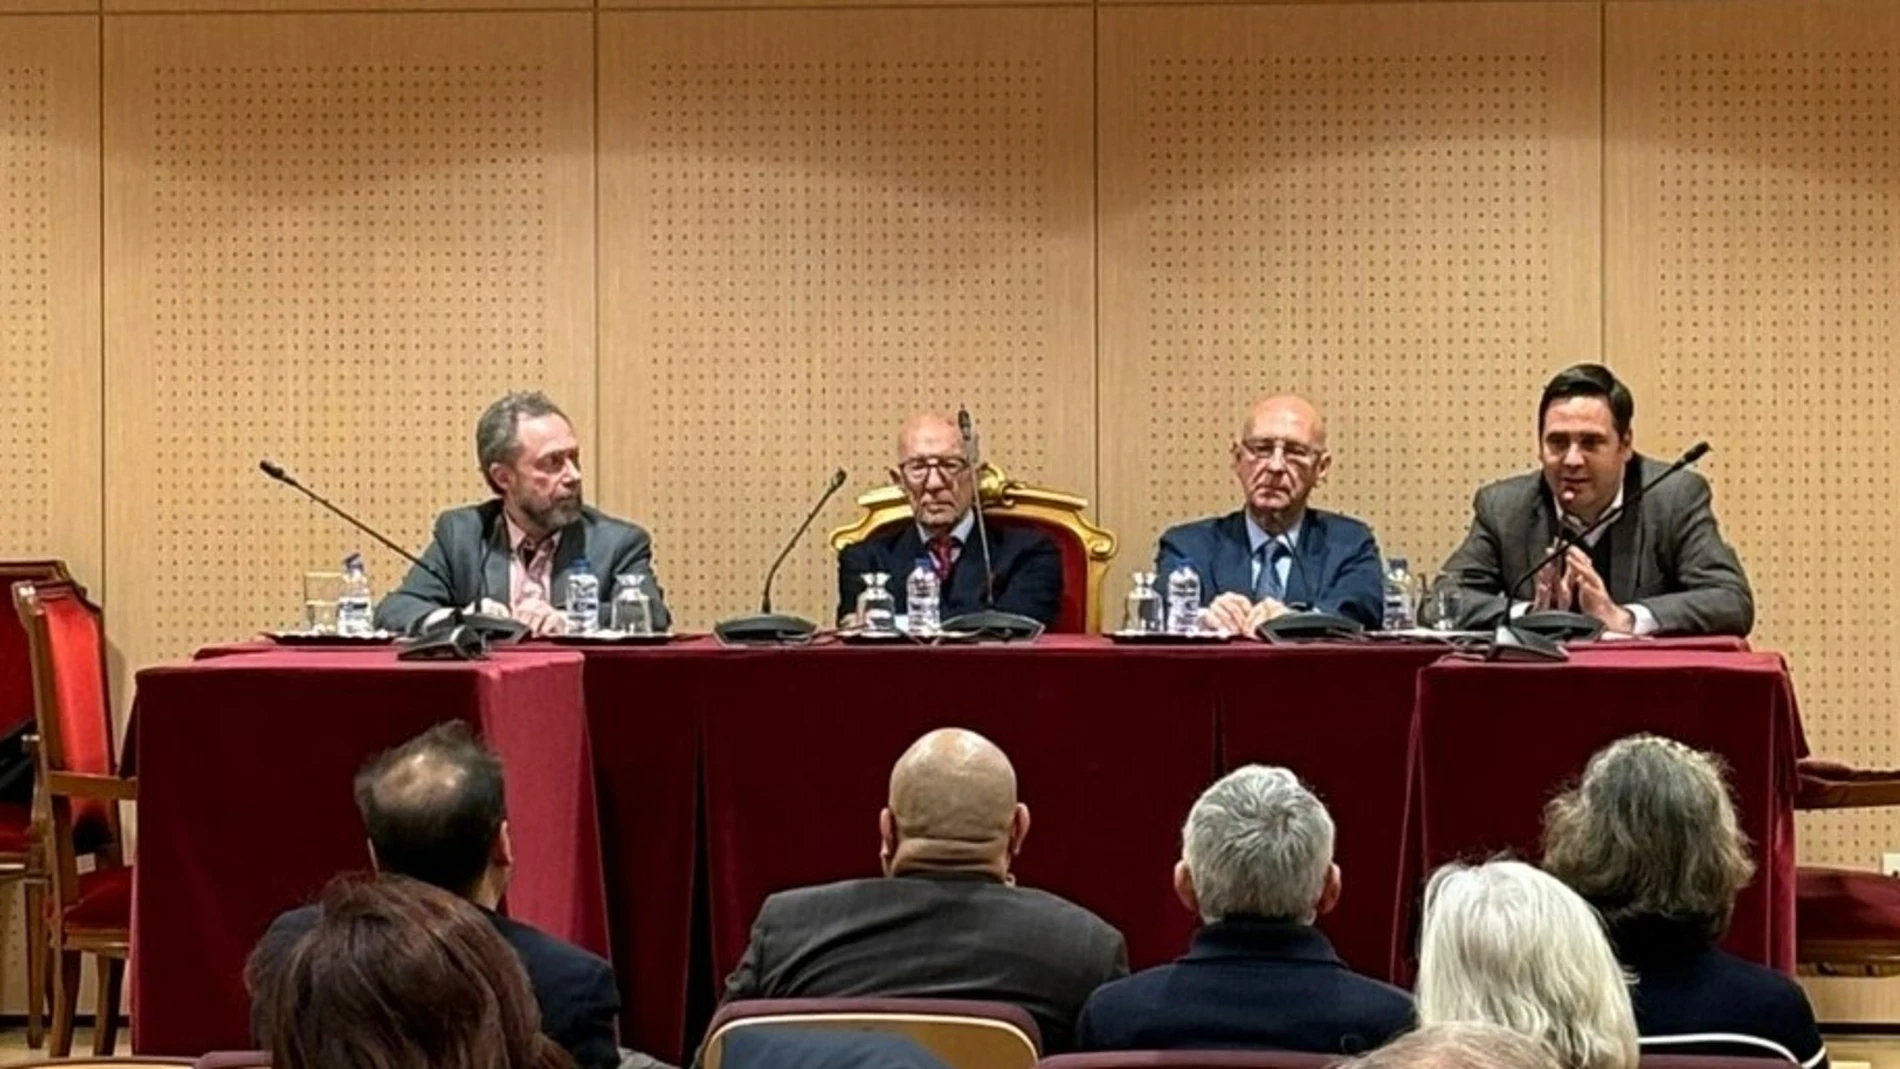 José Luis Dader, Pedro Crespo de Lara, Antonio García Paredes y. Santiago Leyra-Curia (de izda. a dcha.), durante la sesión